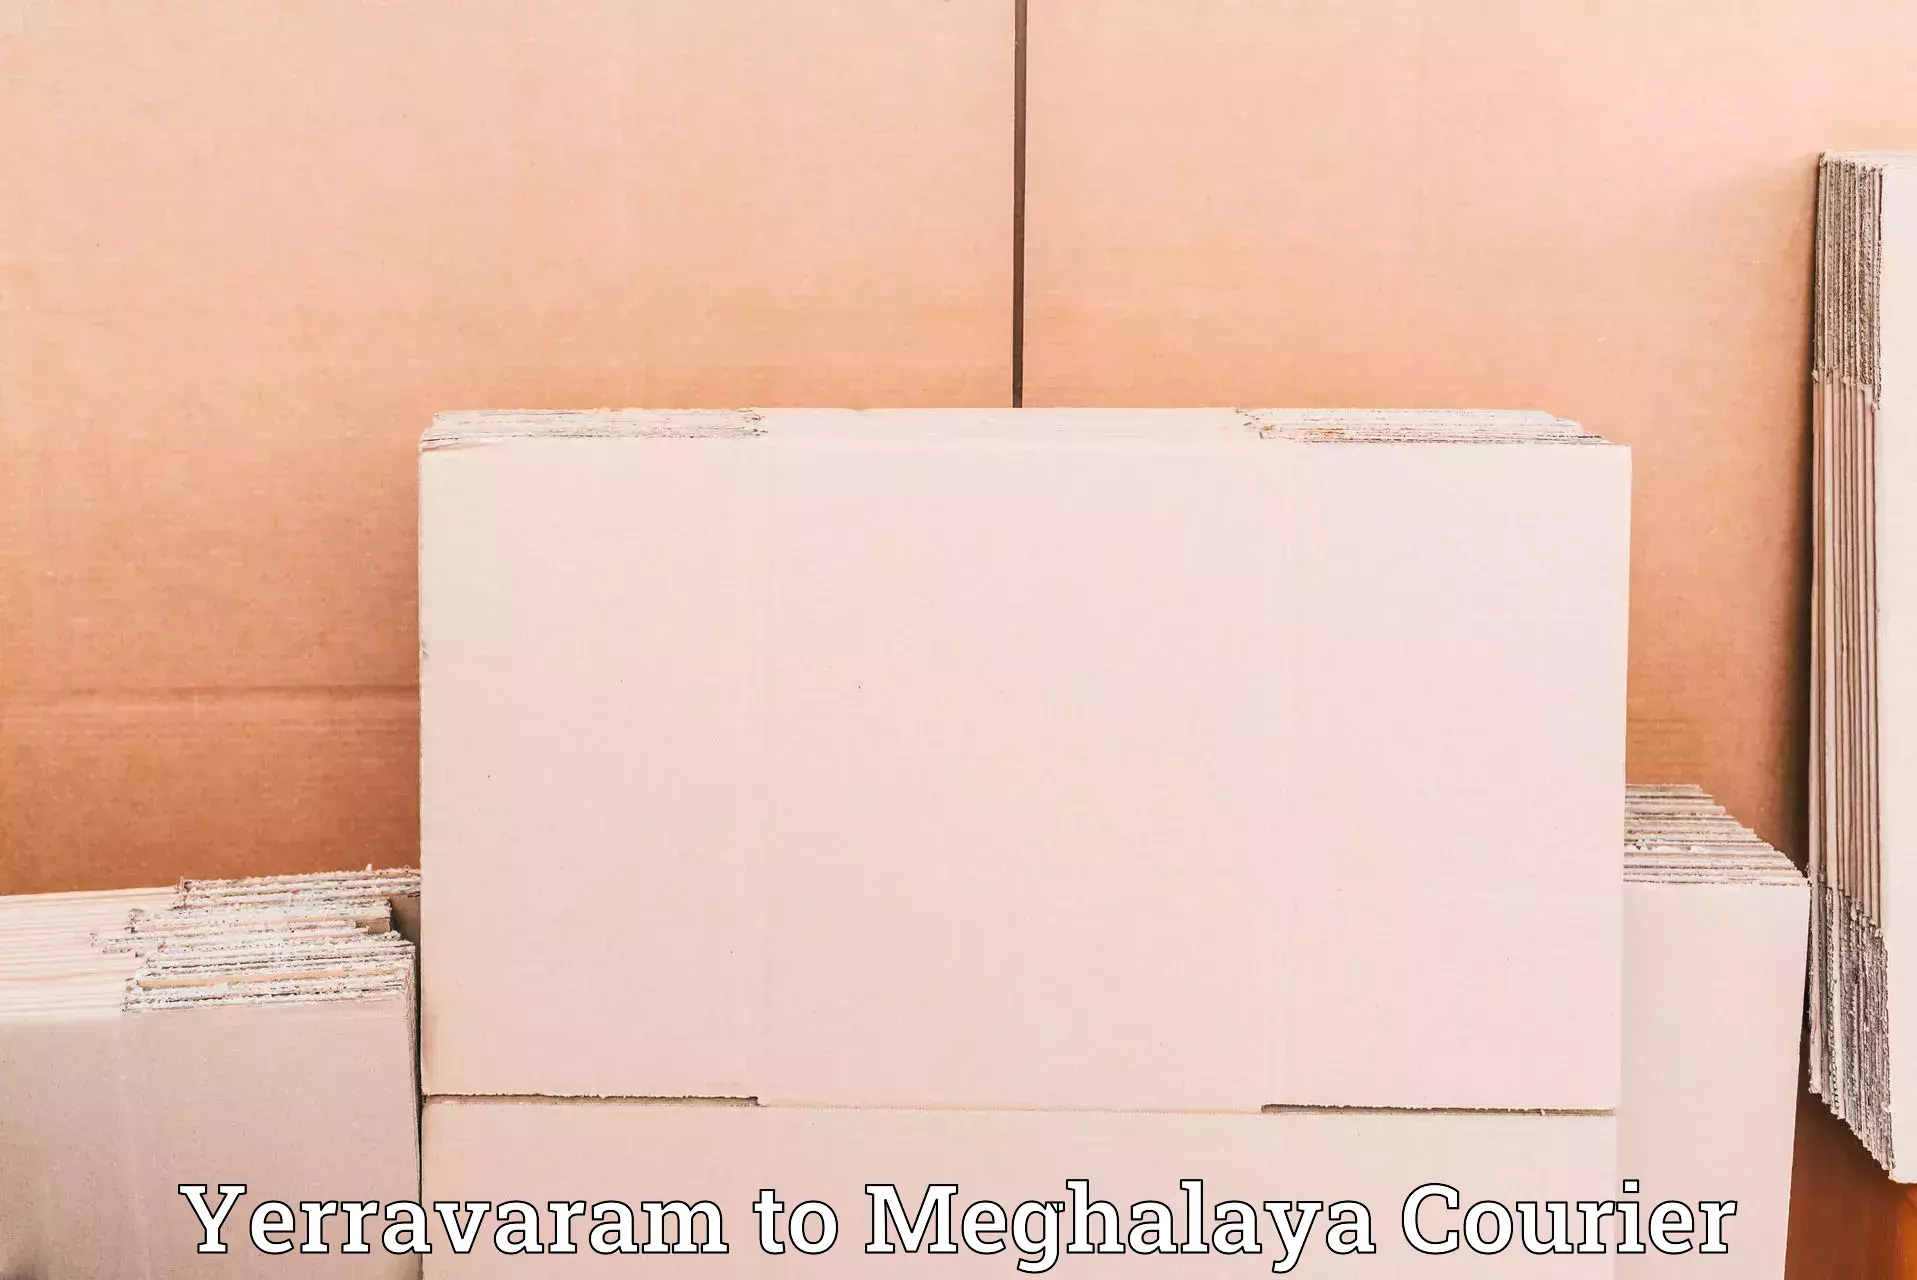 Premium courier solutions Yerravaram to Meghalaya